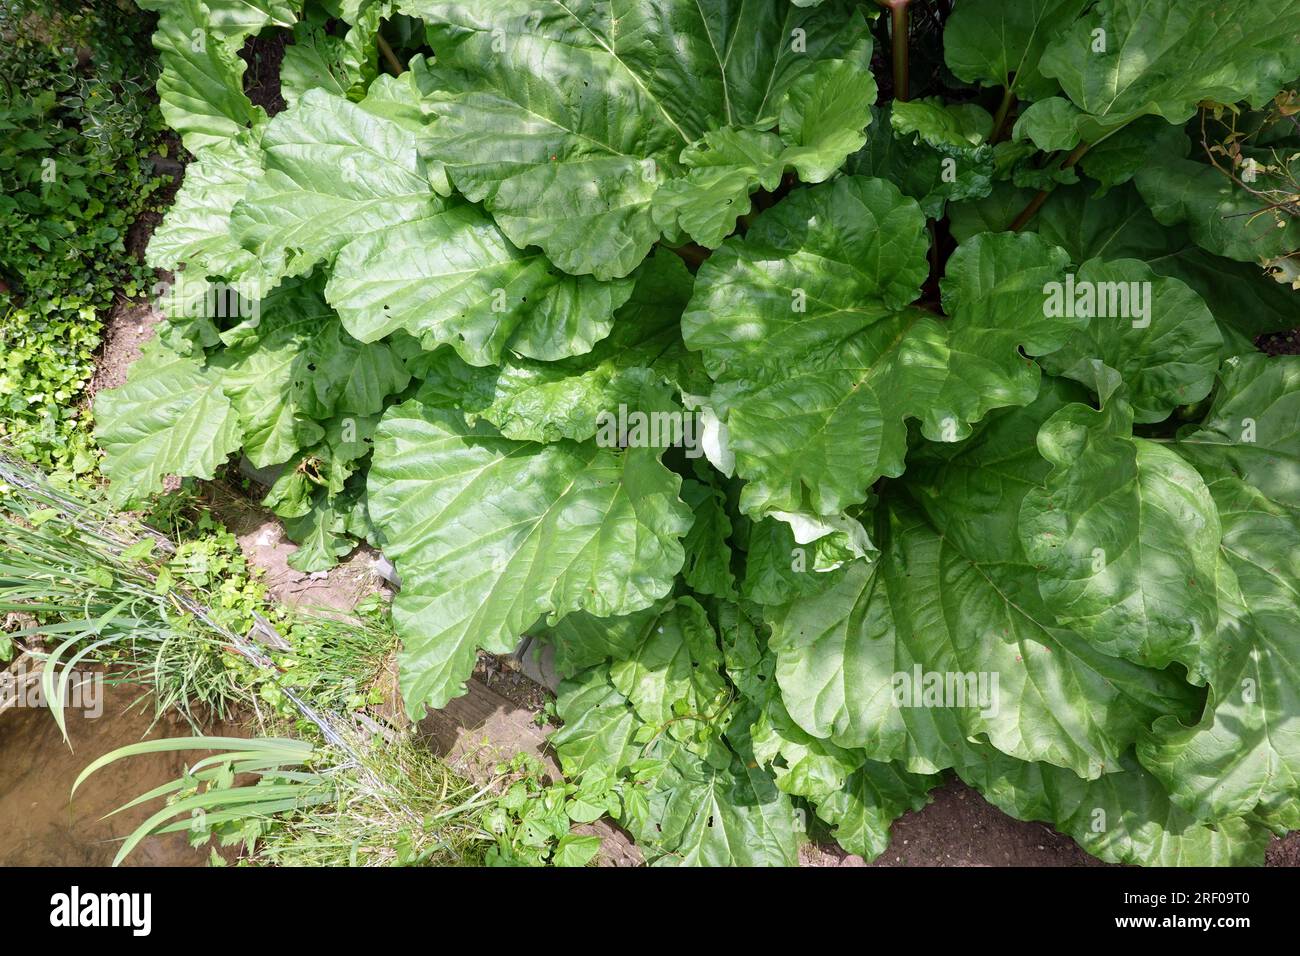 Kultur-Rhabarber (Rheum × hybridum)  - Habitus und Blätter Stock Photo